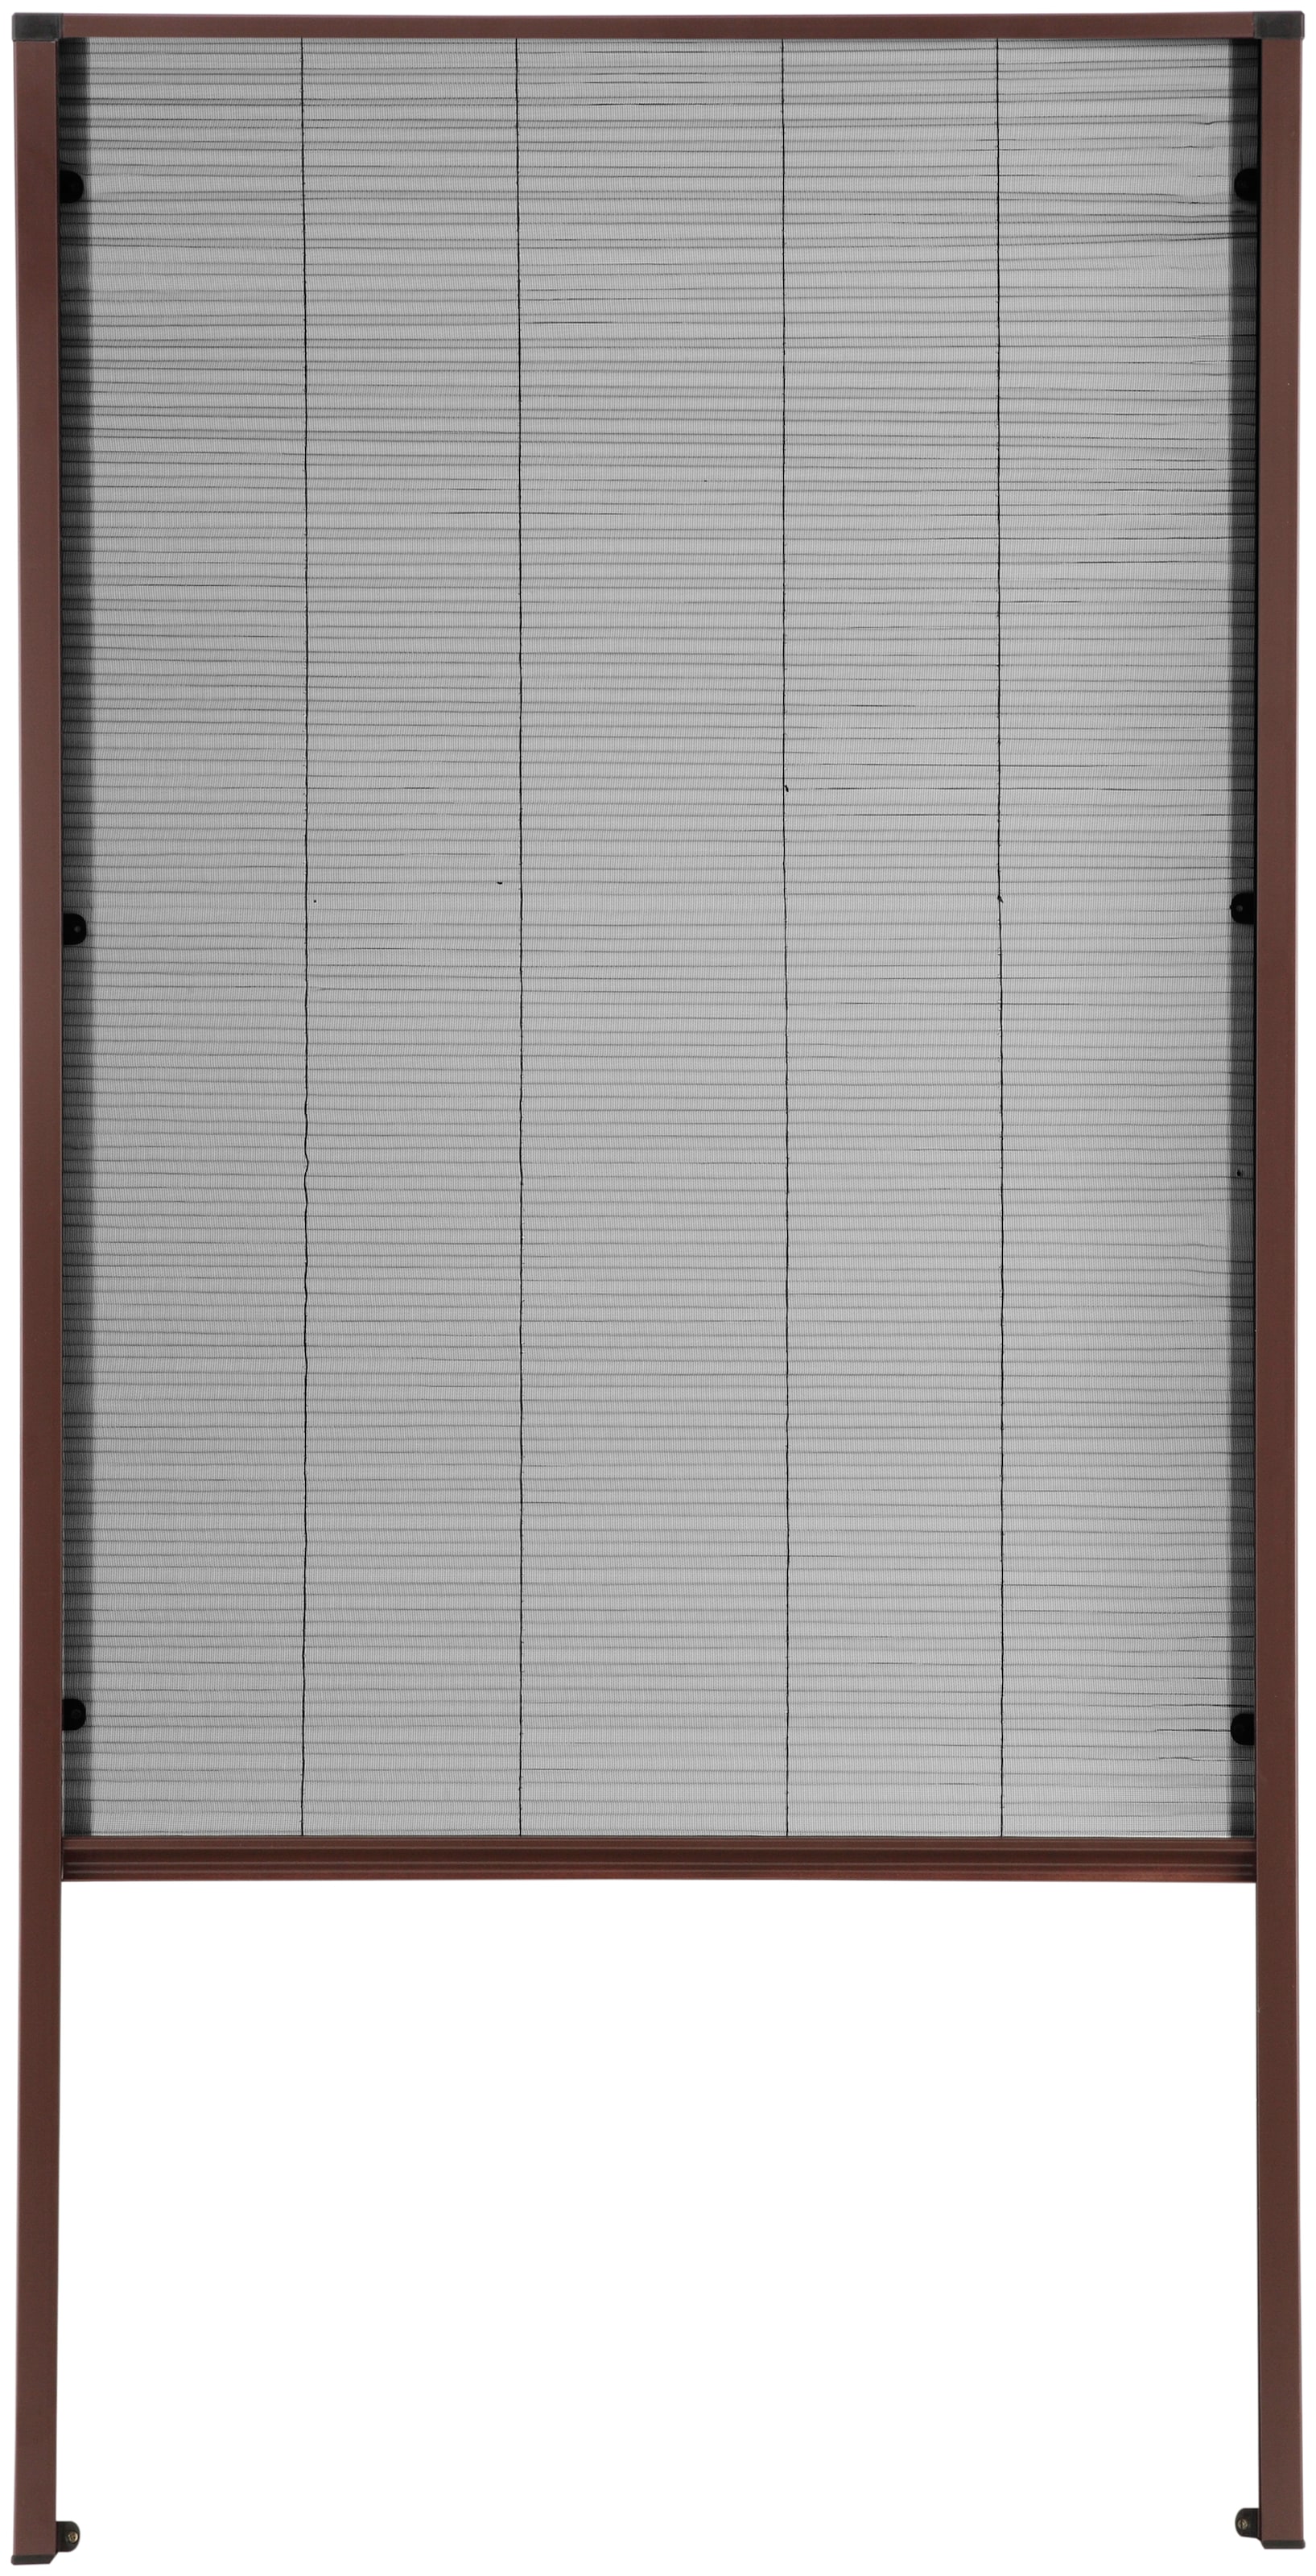 Insektenschutzrollo »für Dachfenster«, transparent, braun/anthrazit, BxH: 80x160 cm